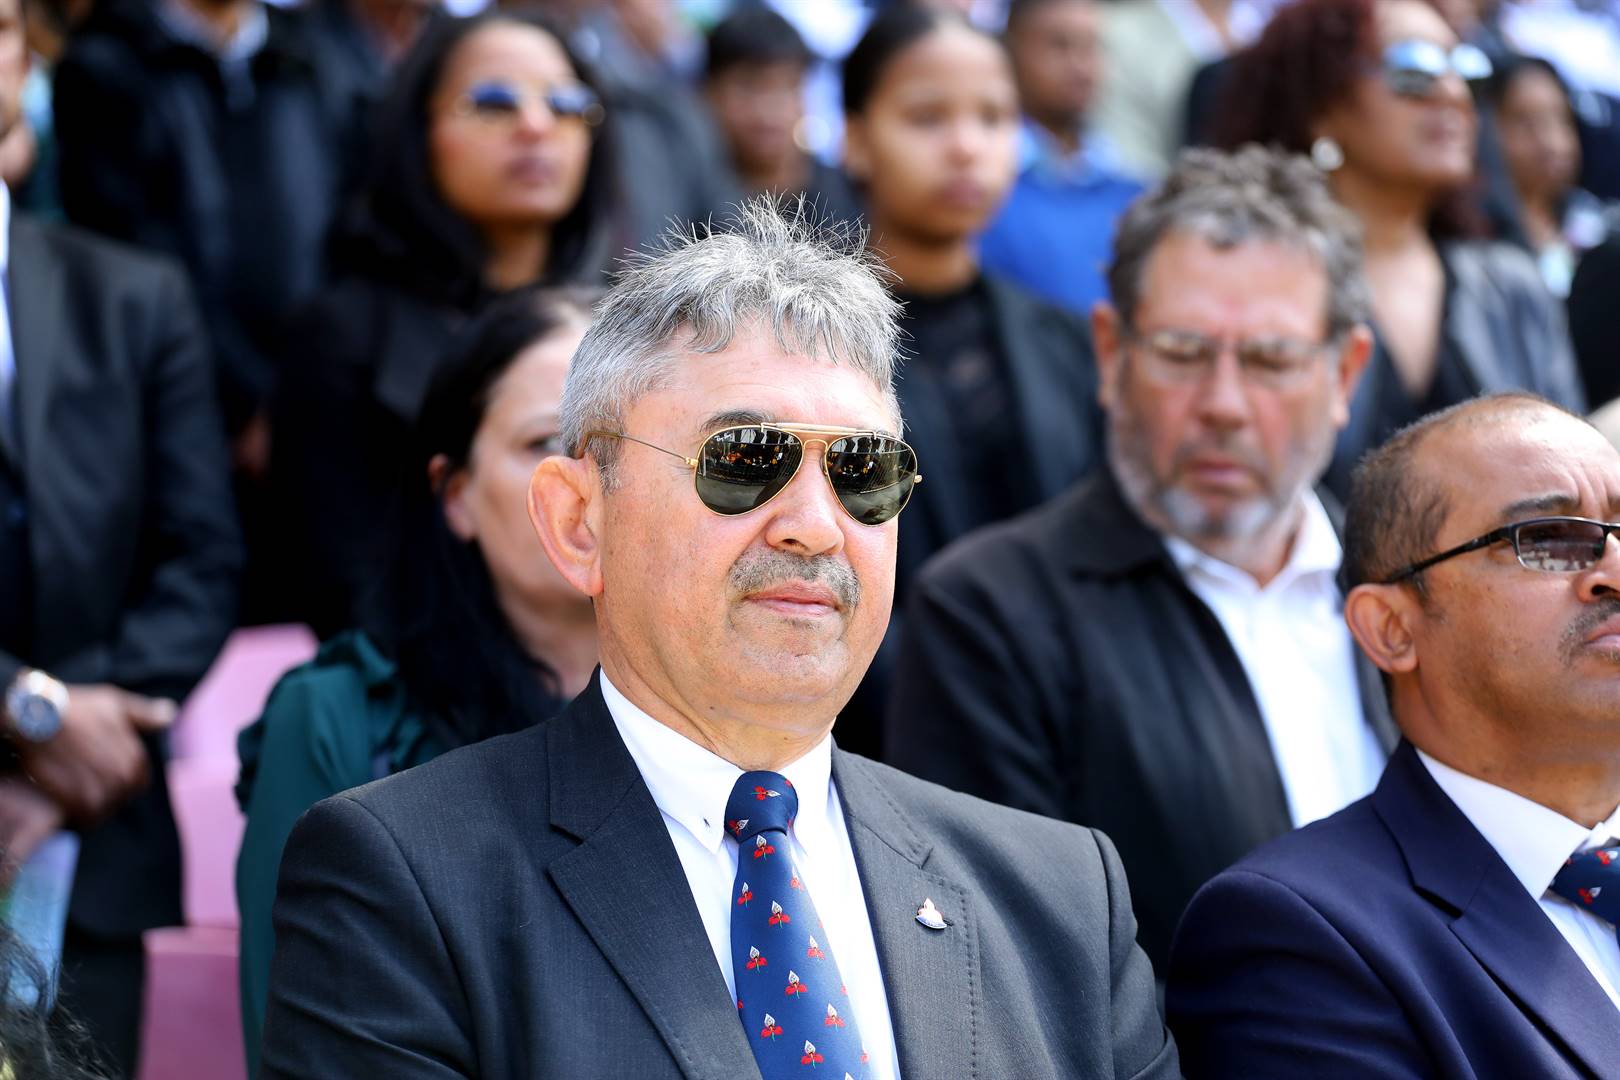 Zelt Marais, president van die WP Rugbyunie, is Donderdag onder skoot van lede van sy uitvoerende raad in die hooggeregshof in Kaapstad. Daar word onder meer gevra dat hy uit sy amp verwyder word. Foto: Gallo Images